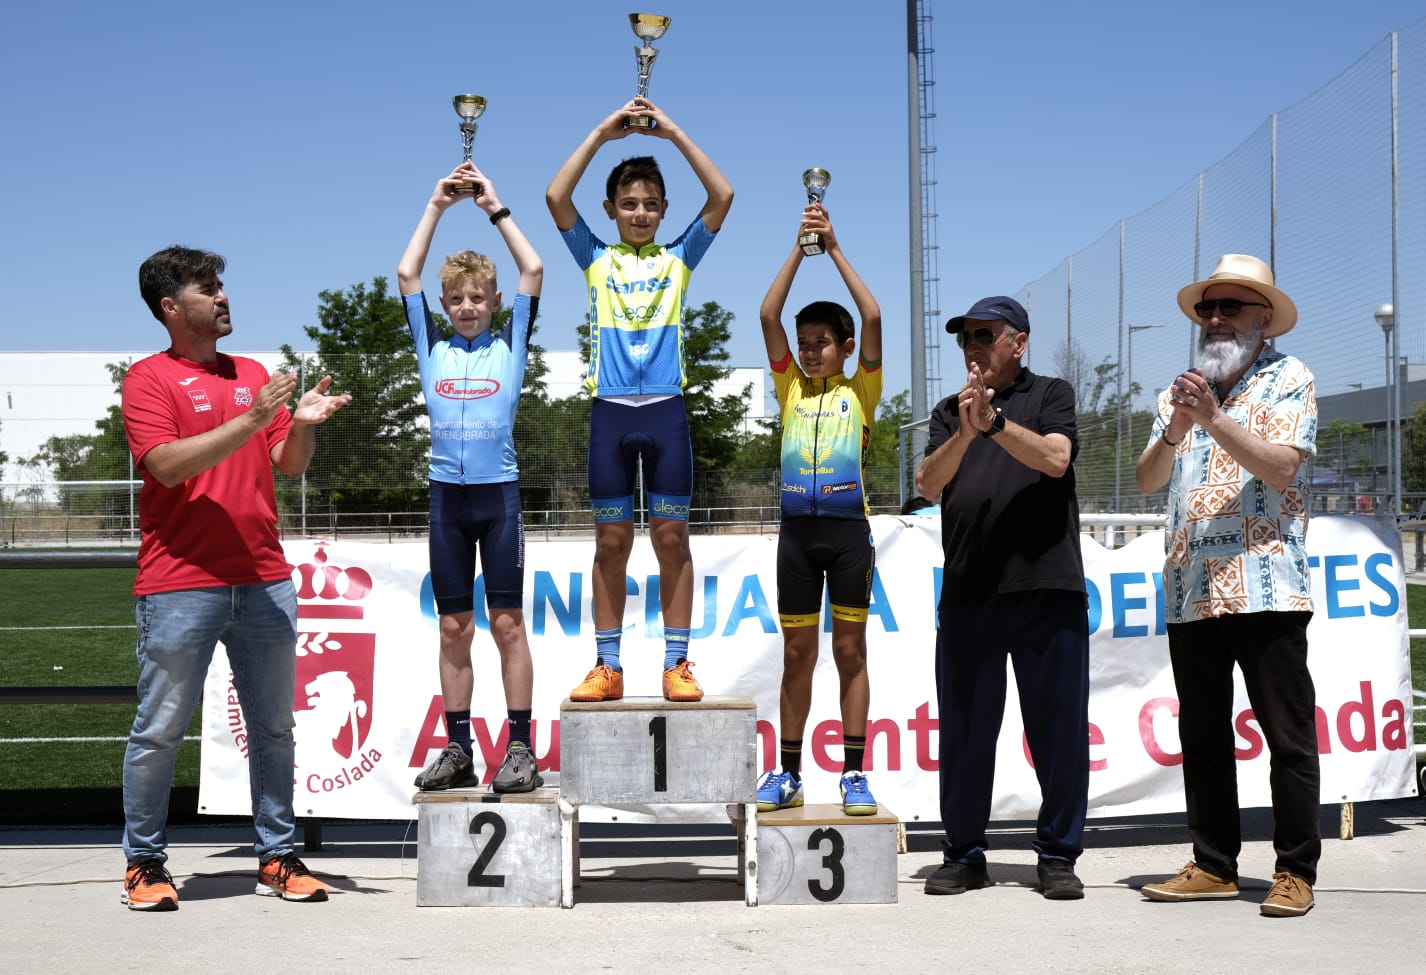 El XLVI Trofeo Amistad de la Escuela de Ciclismo Union Ciclista Coslada contó con 150 inscritos en una jornada con unas temperaturas muy agradables